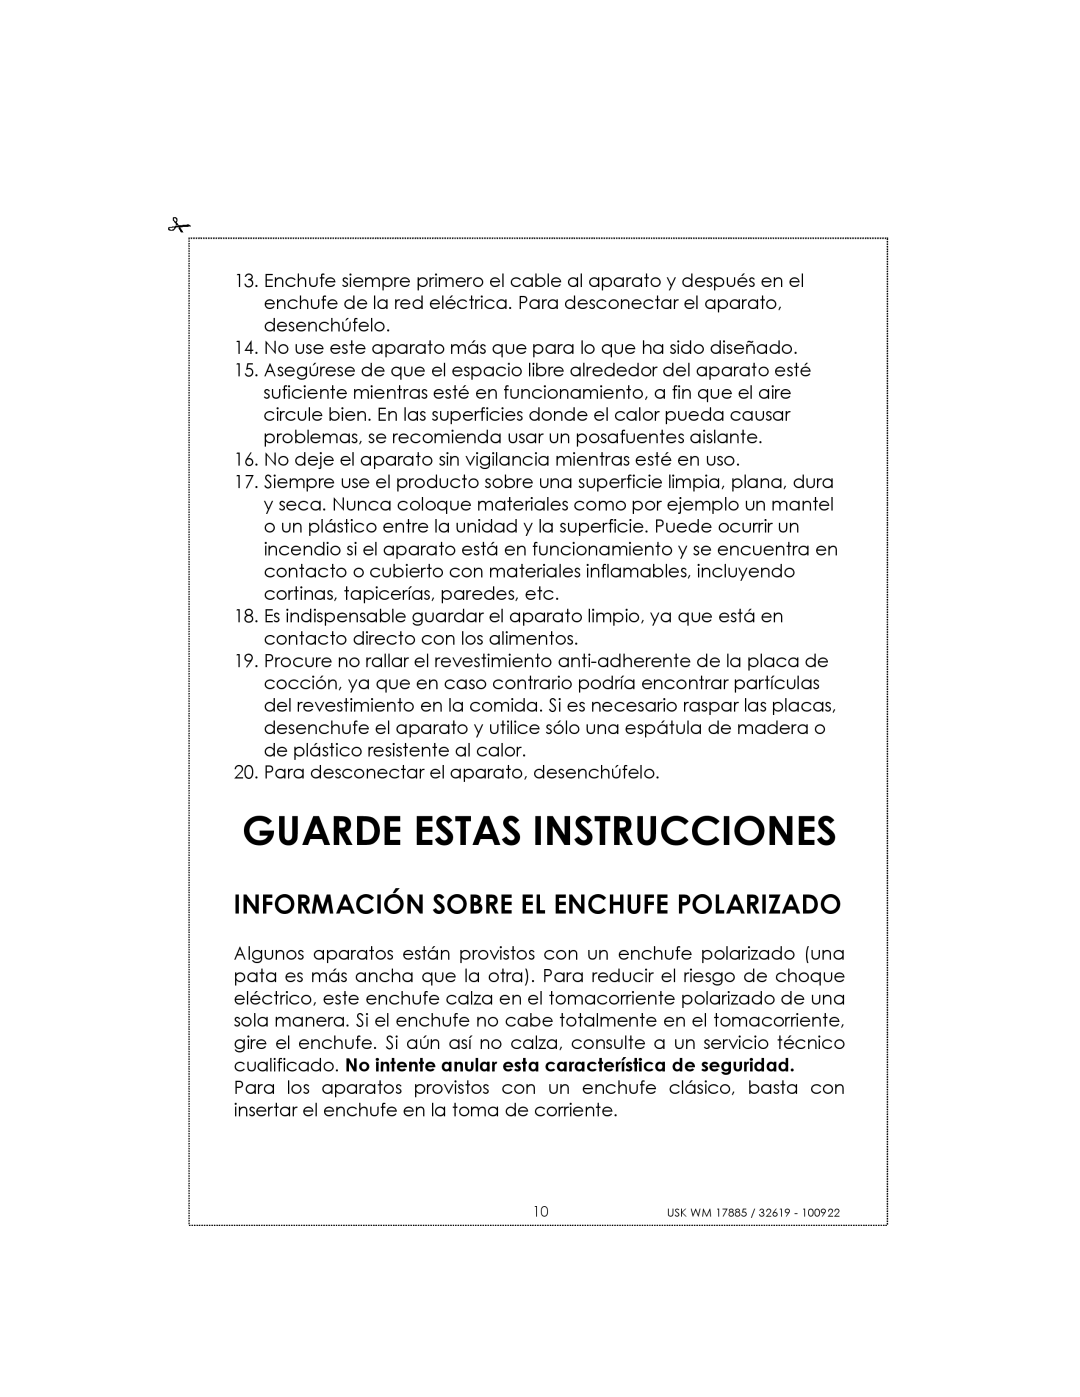 Kalorik usk wm 32619, usk wm 17885 manual Guarde Estas Instrucciones, Información Sobre El Enchufe Polarizado 